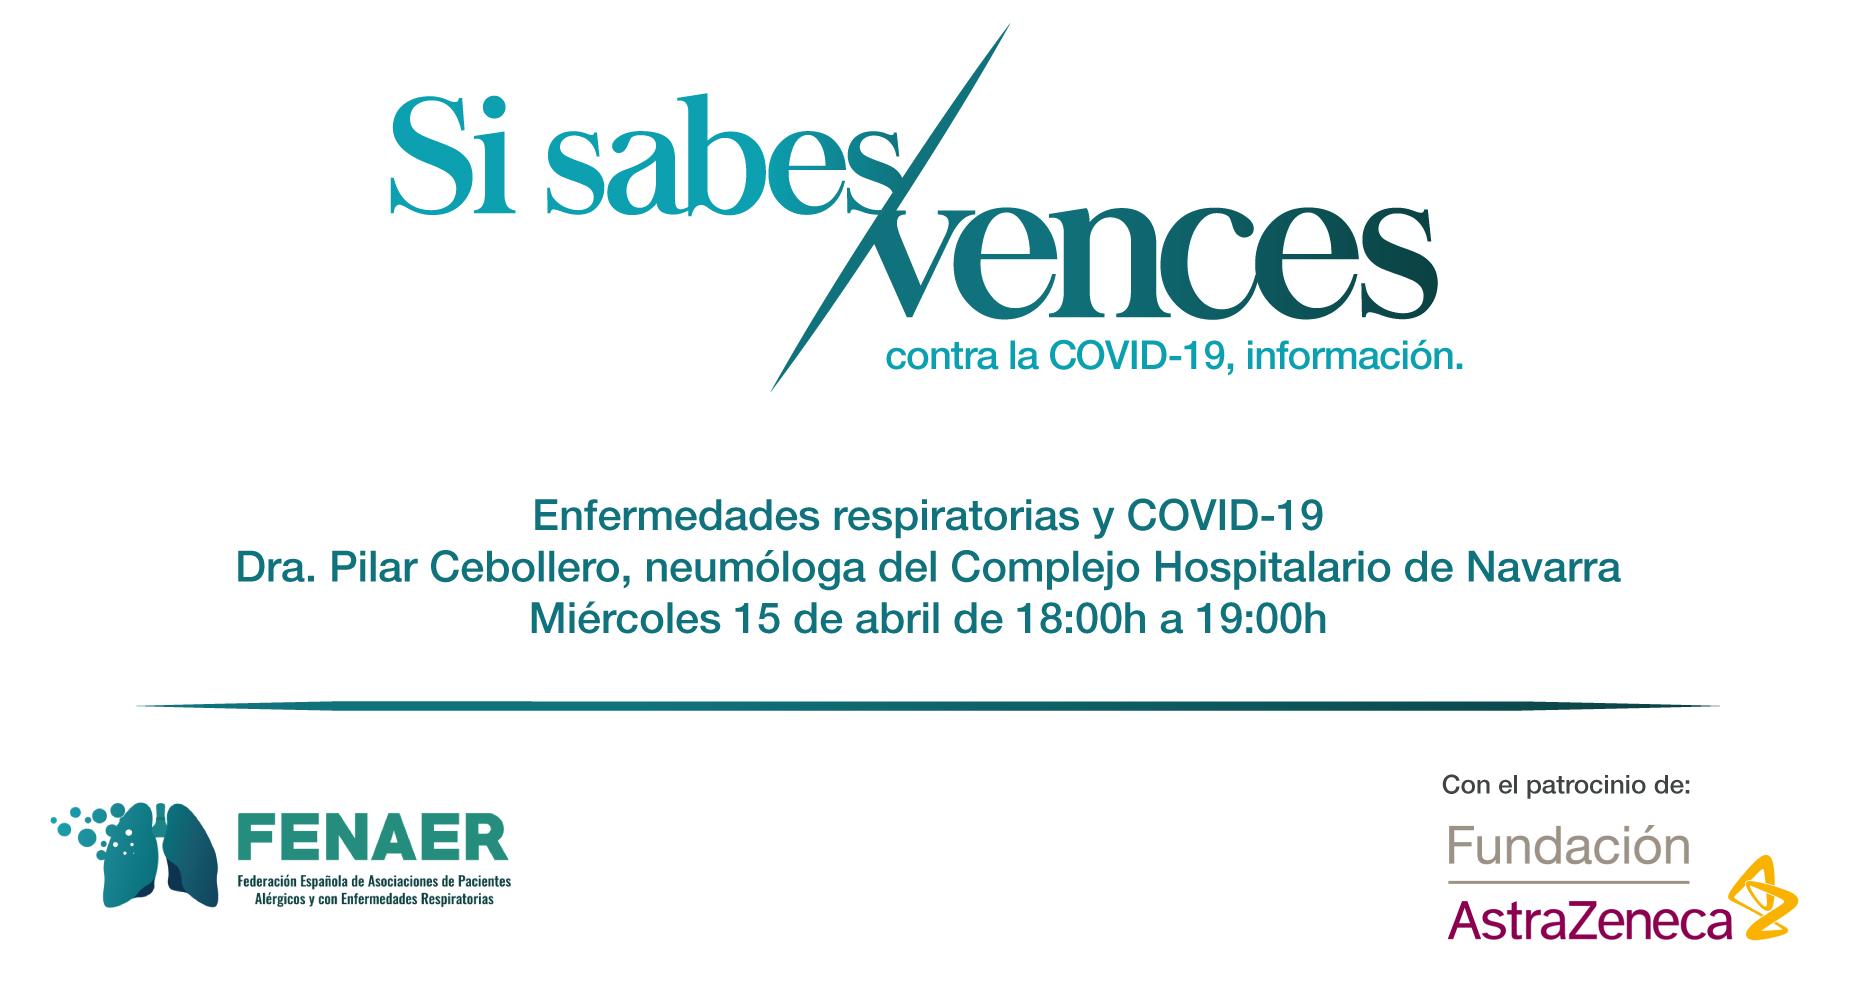 La Dra. Pilar Cebollero responde a las dudas de los pacientes respiratorios sobre la covid-19 en un evento online promovido por FENAER